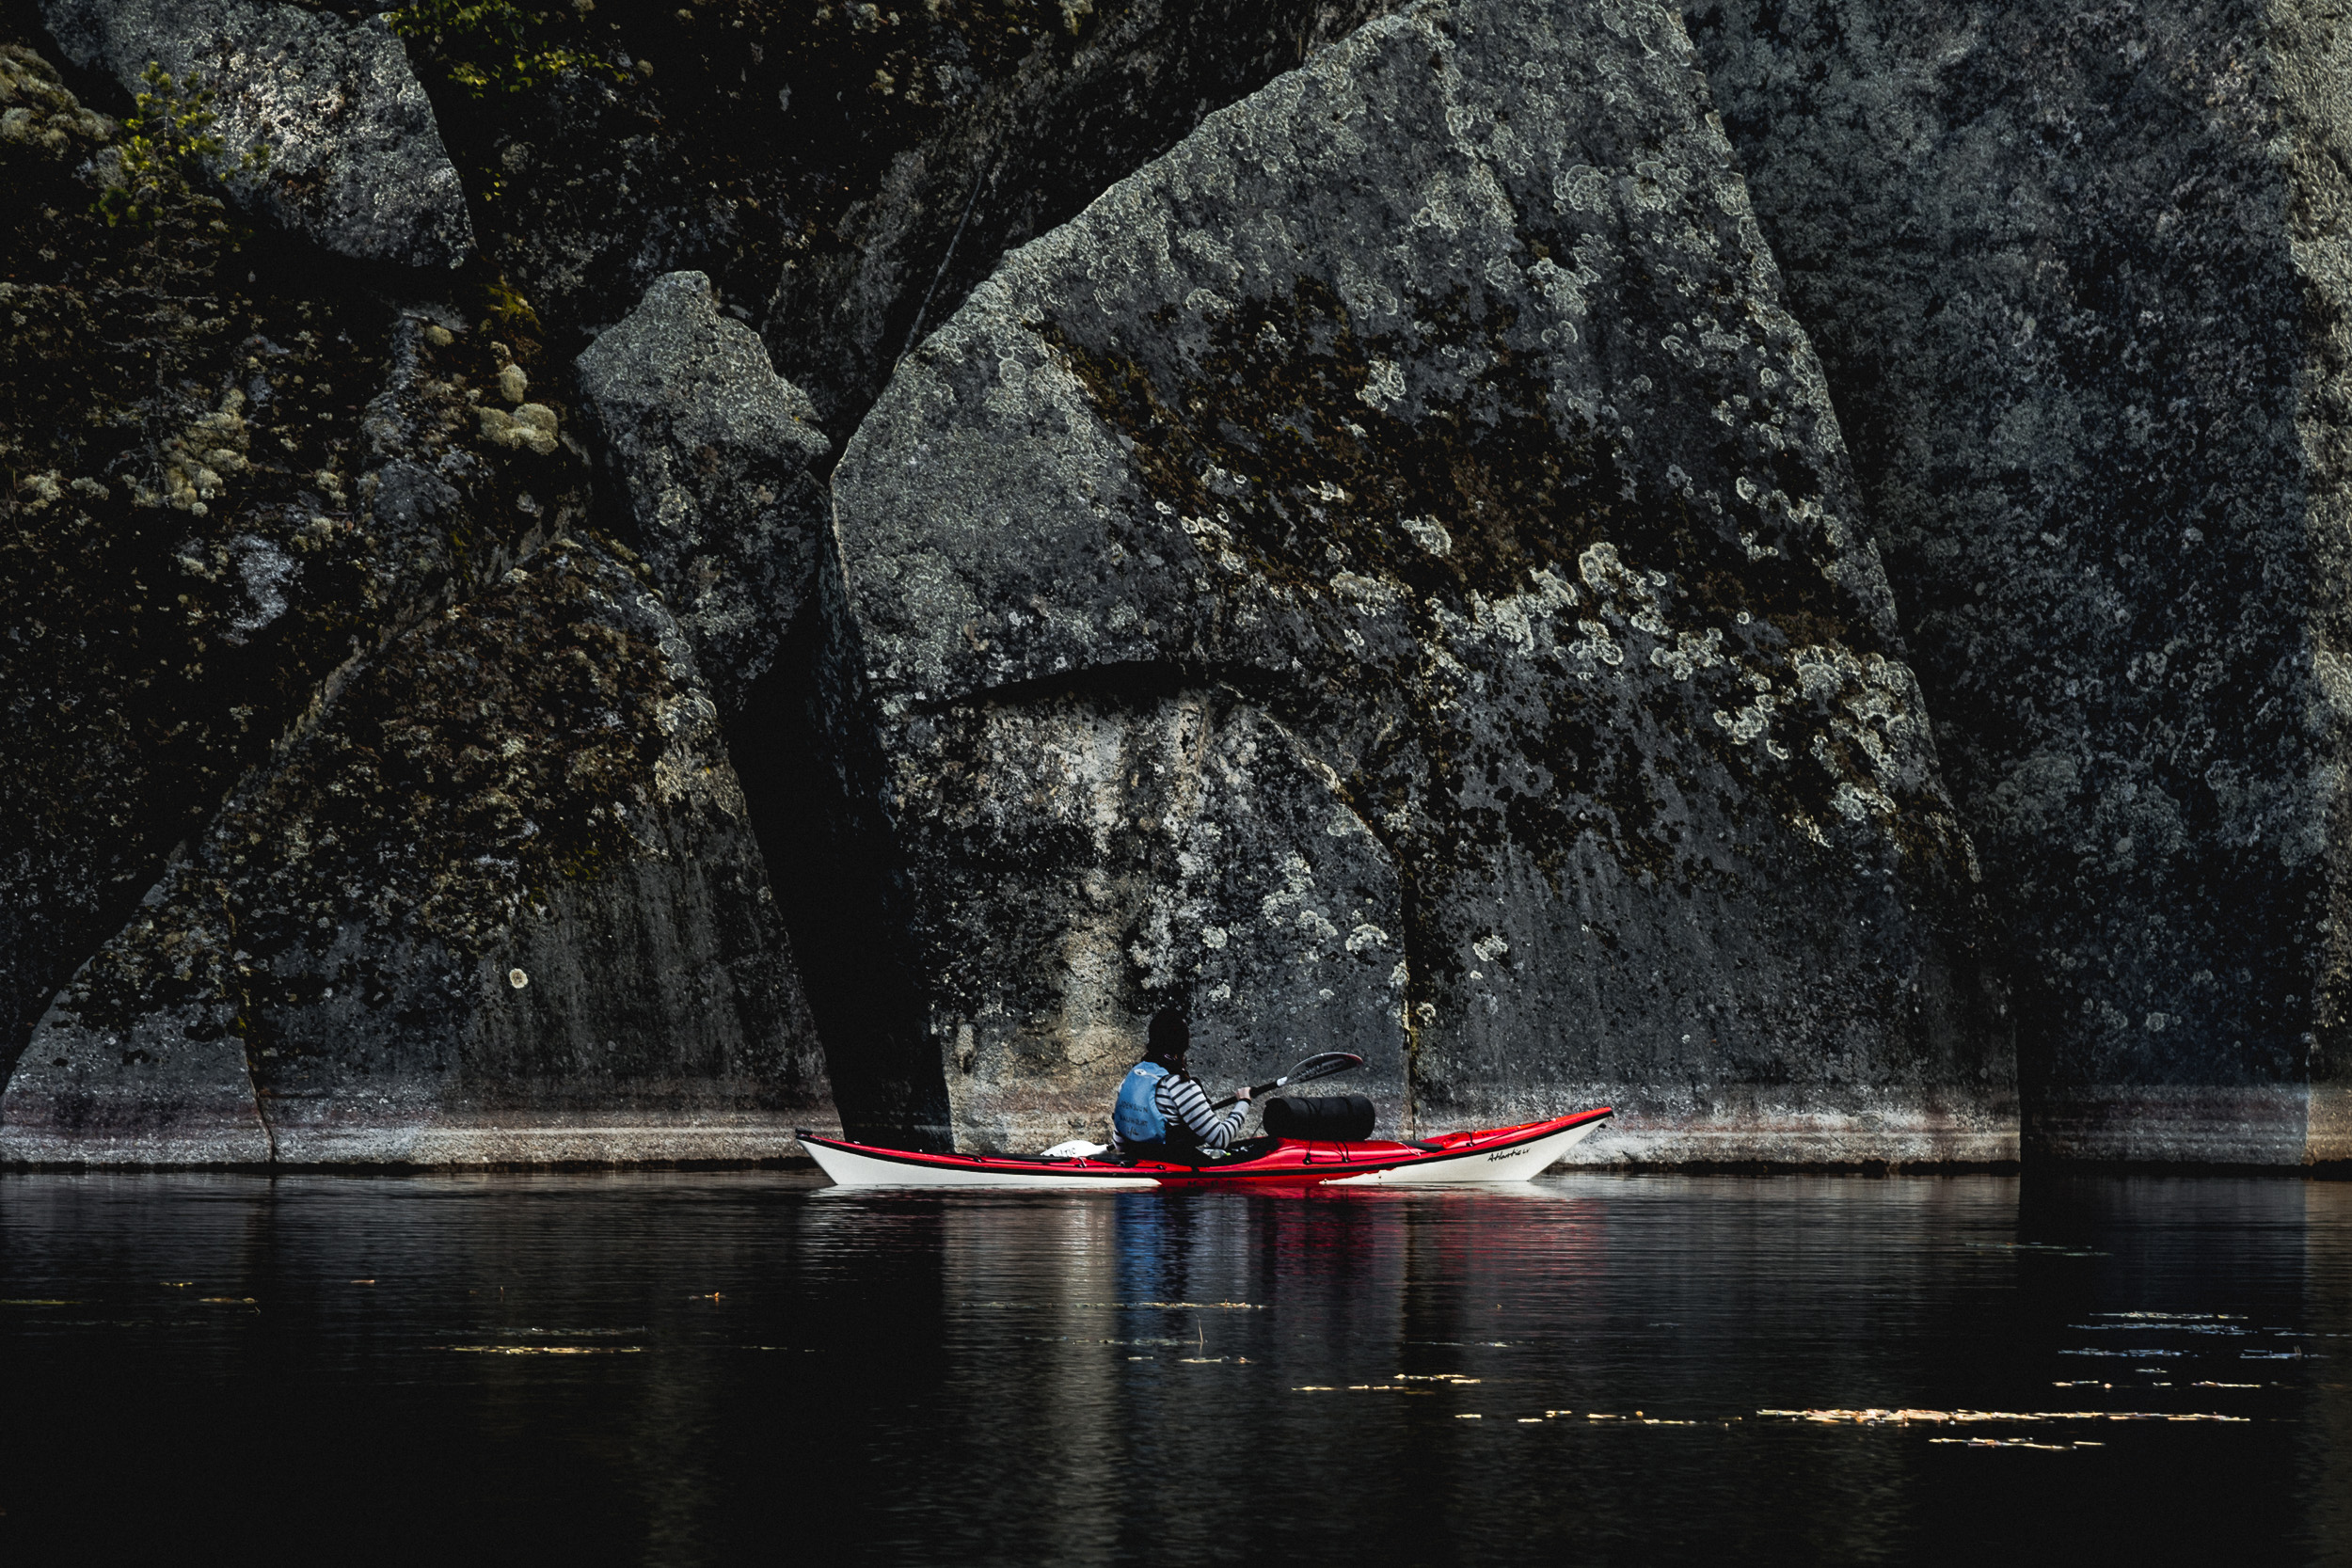 19-kolovesi-national-park-finland-kayaking-adventure-anna-elina-lahti-photographer.jpg